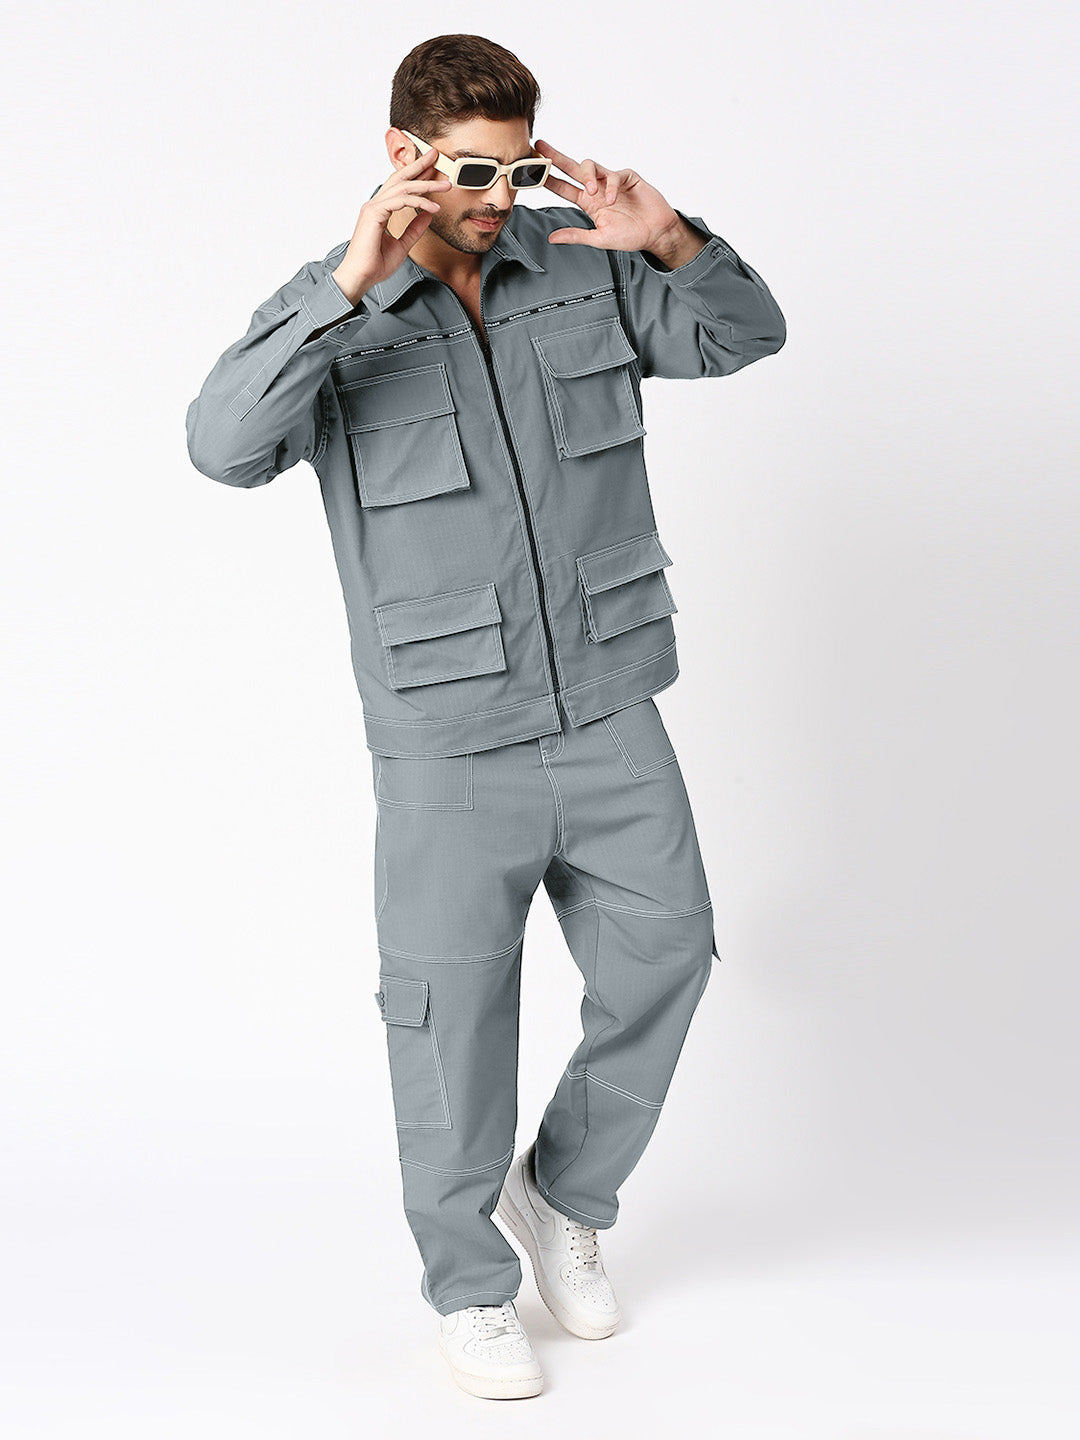 Beige Slub Texture Sleevesless Jacket Pant Set - TRUEBROWNS LIFESTYLE PVT.  LTD. - 4059721